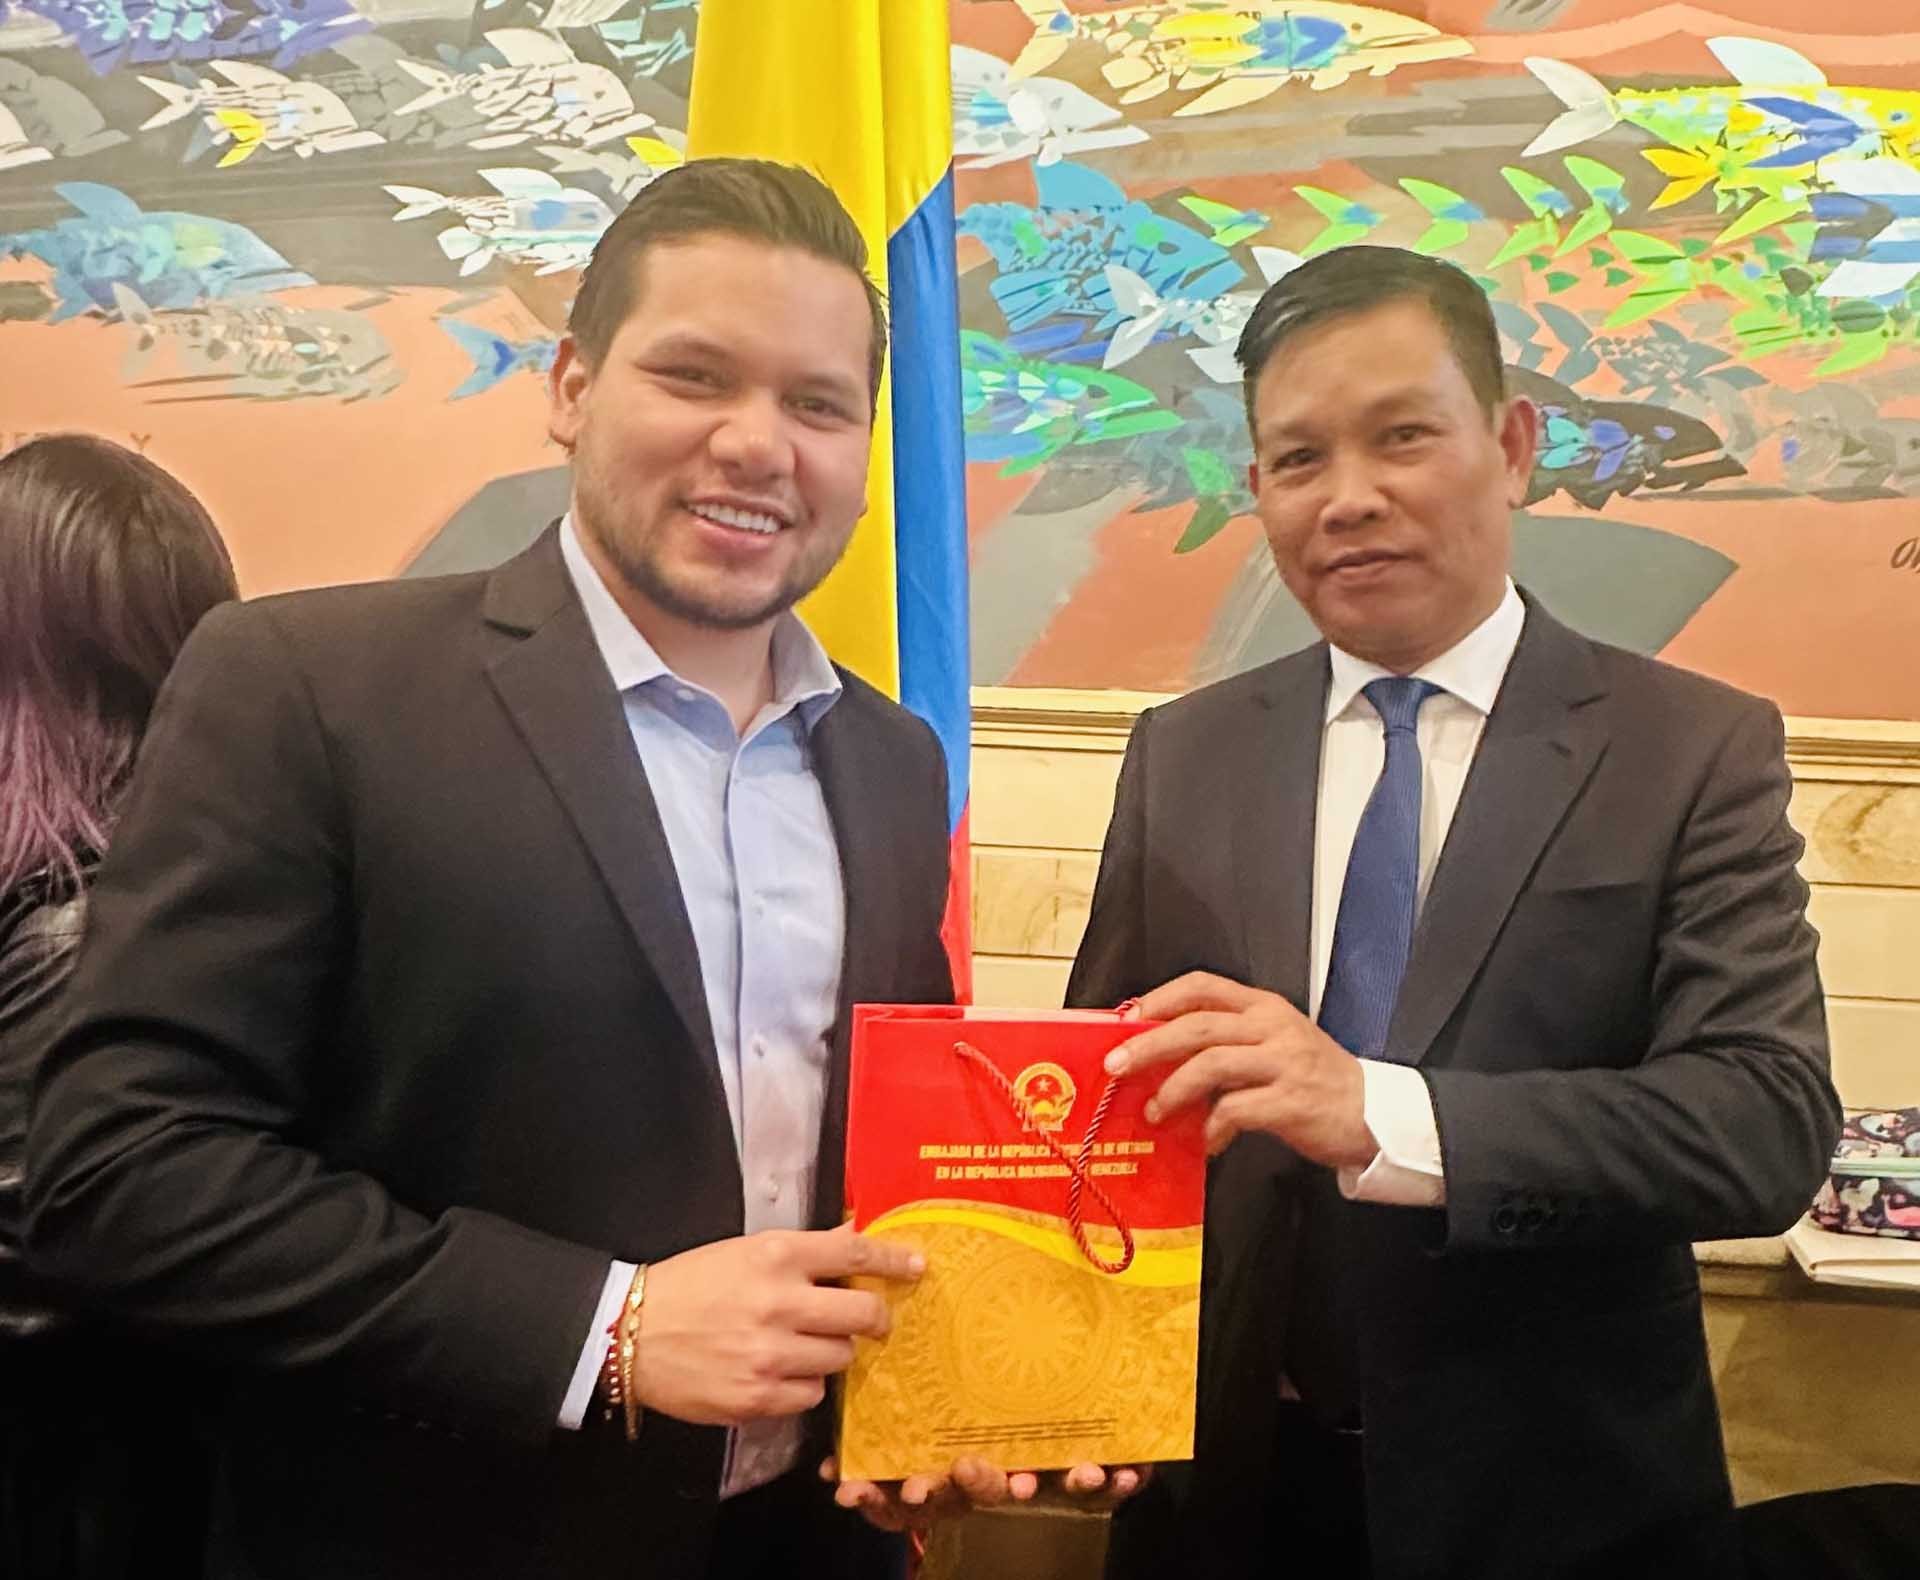 Quốc hội Colombia mong muốn thúc đẩy quan hệ với Việt Nam